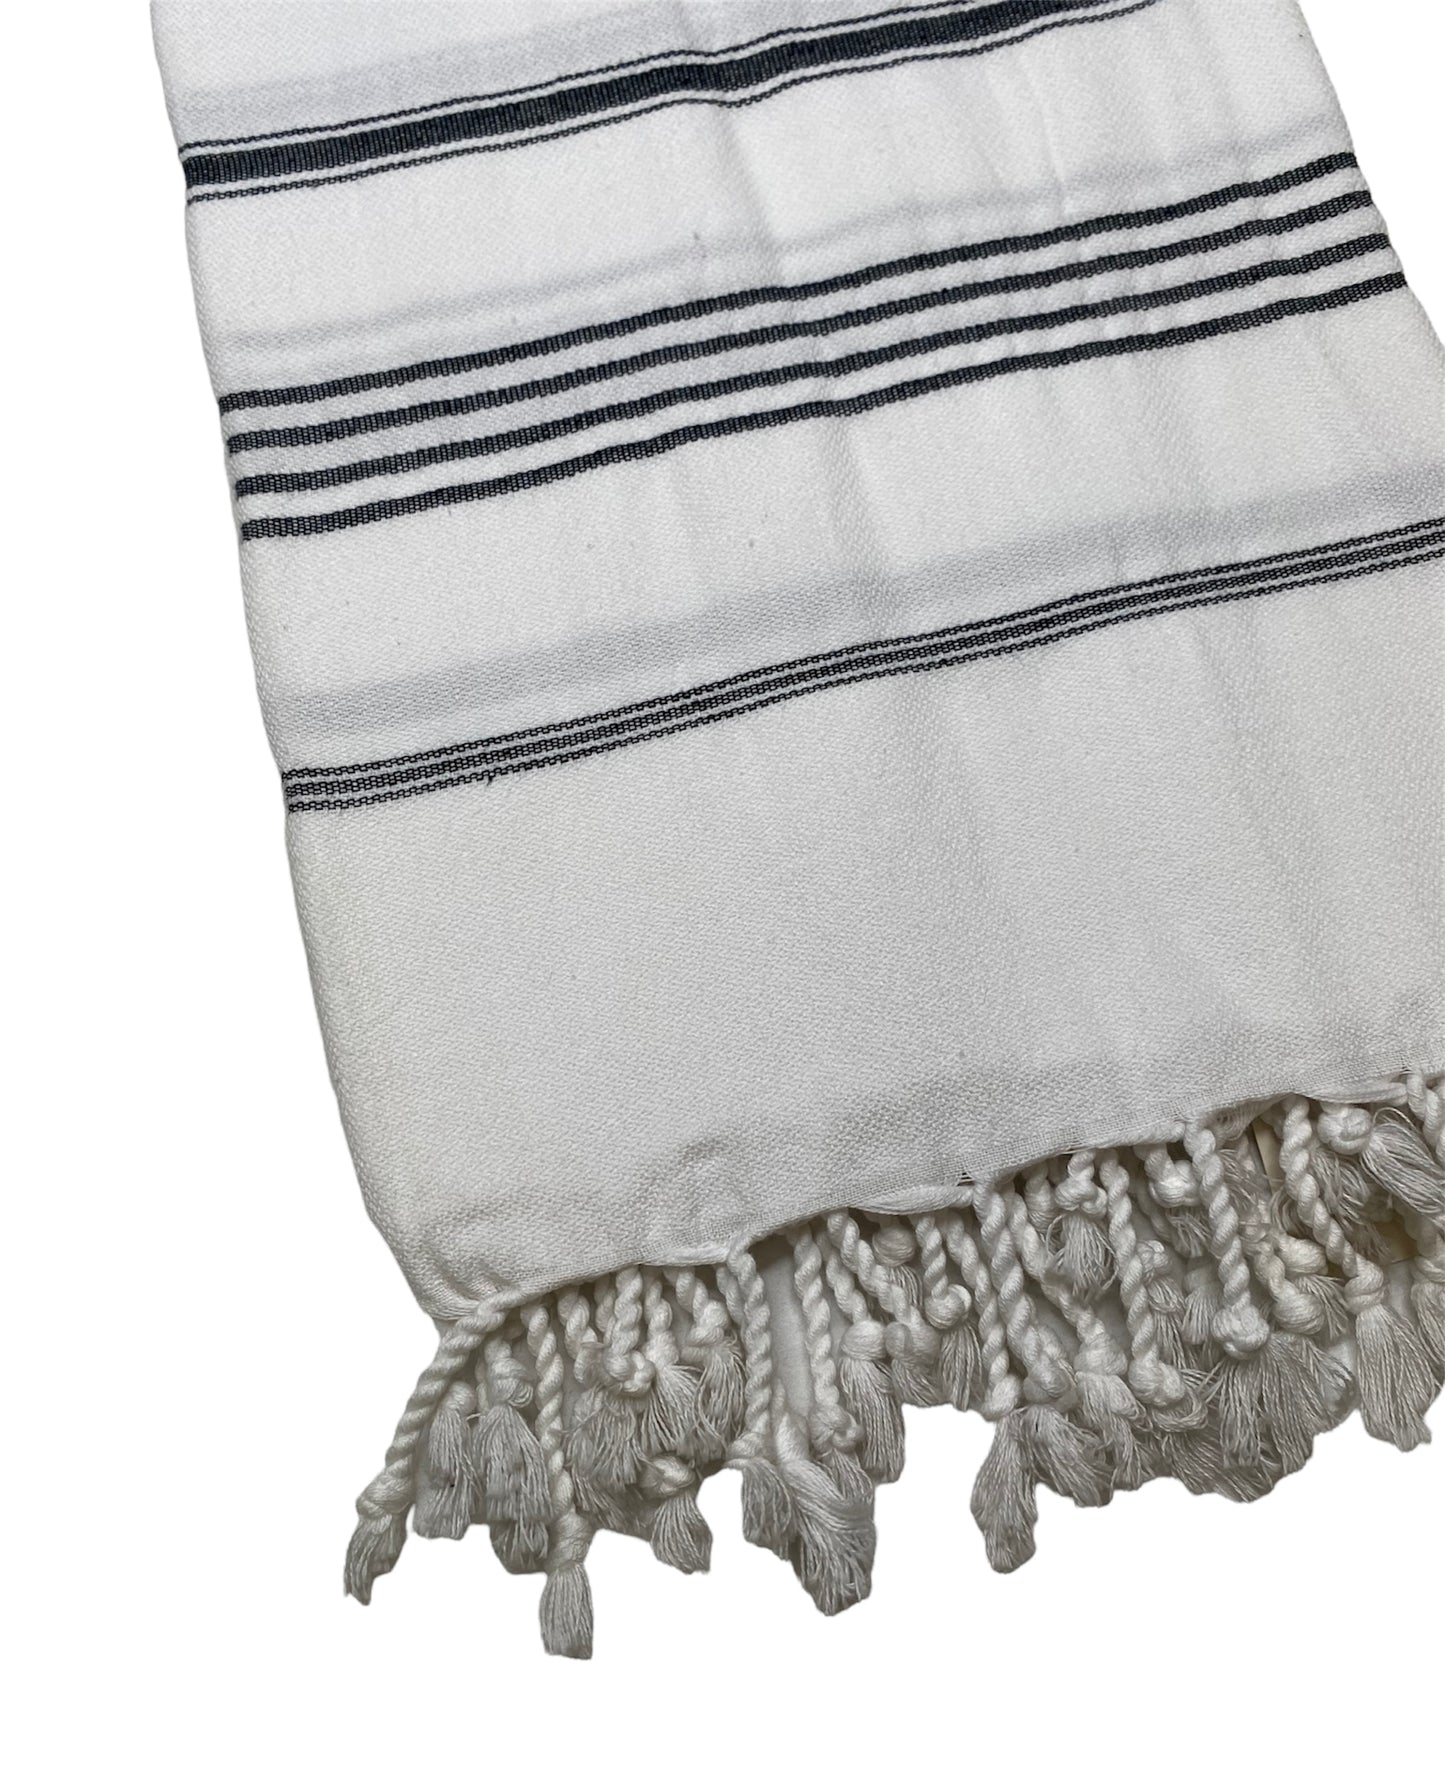 Black White Striped Turkish Towel/Throw